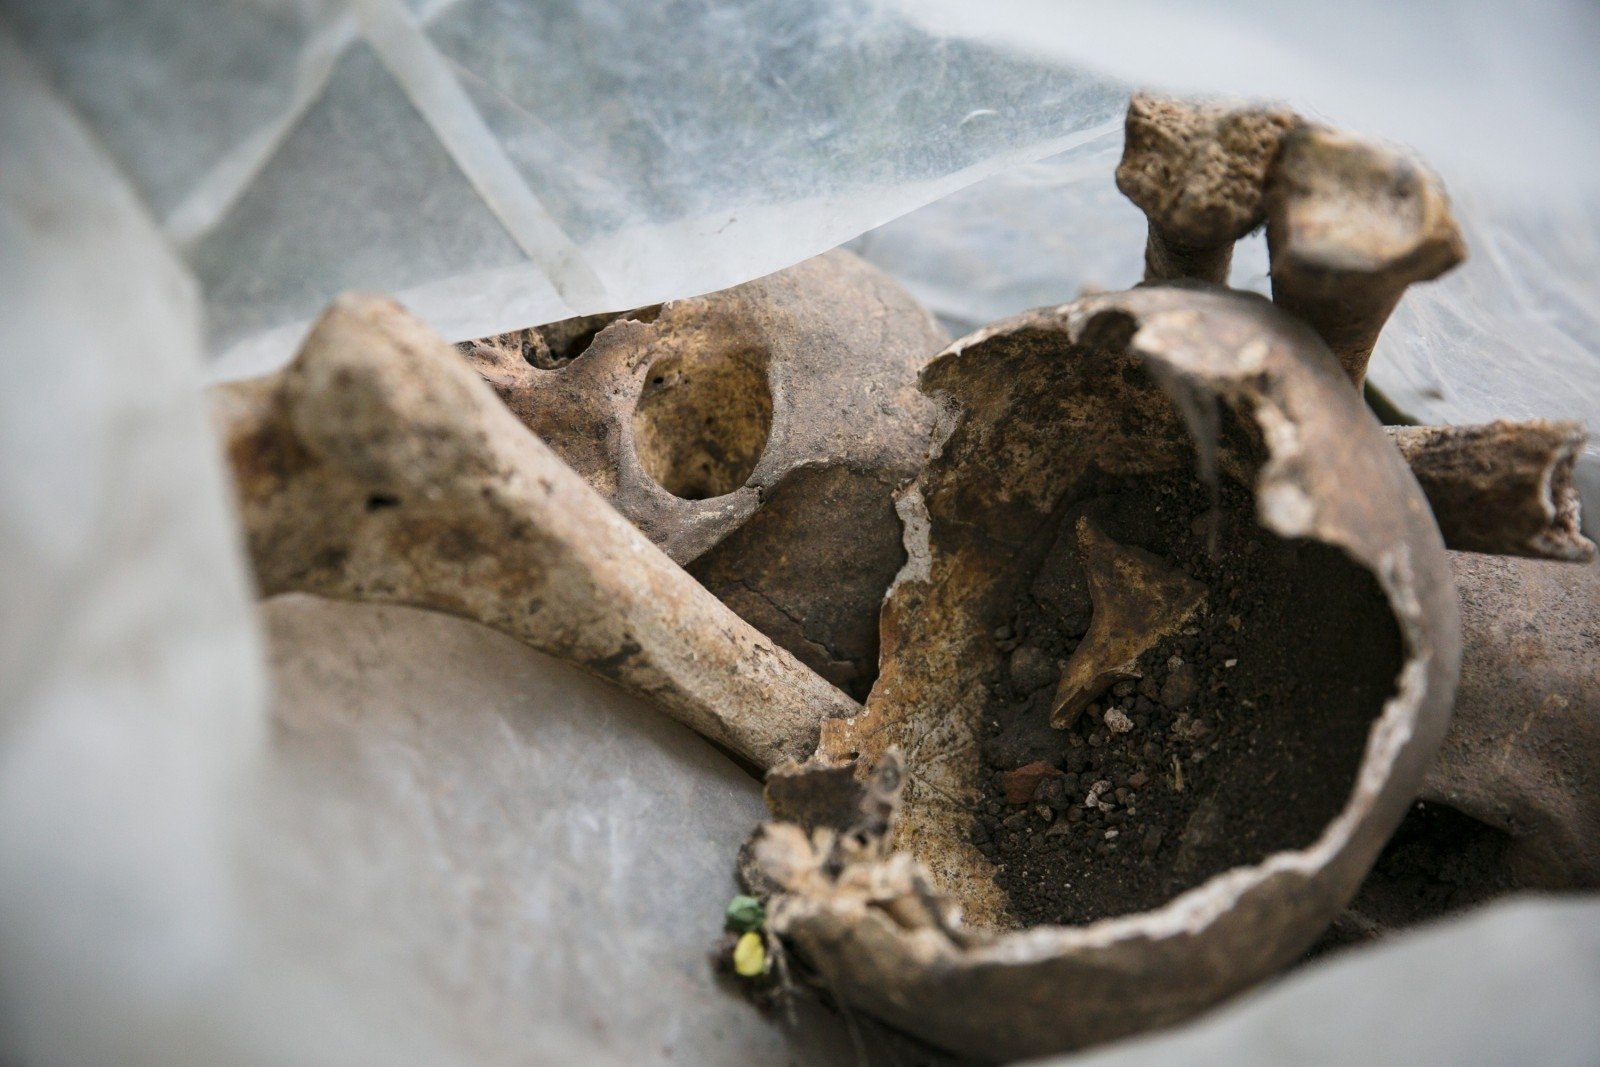 Penktadienio popietę Paįstryje buvo rastas kraupus radinys – ne vieno žmogaus kaulai bei kaukolės fragmentai. Aiškinamasi, kokio amžiaus šie palaikai bei kaip jie atsirado.